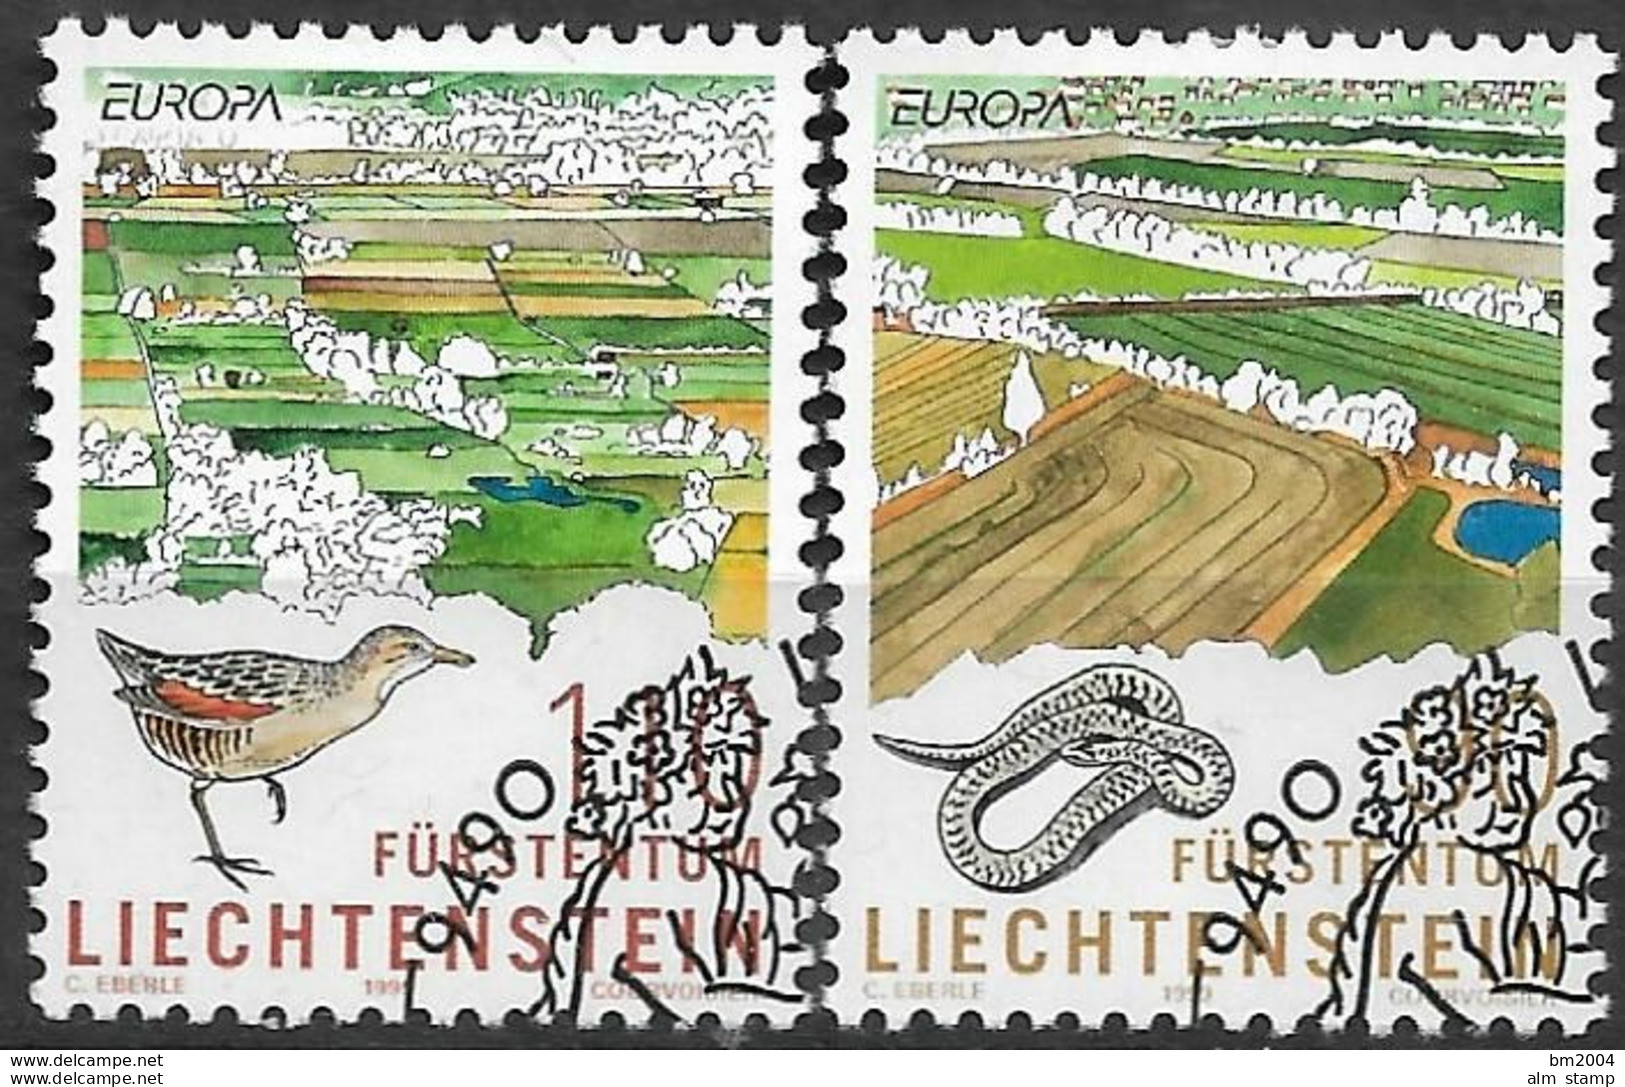 1999 Liechtenstein   Mi. 1190-1 Used Europa: Natur -und Nationalparks - 1999